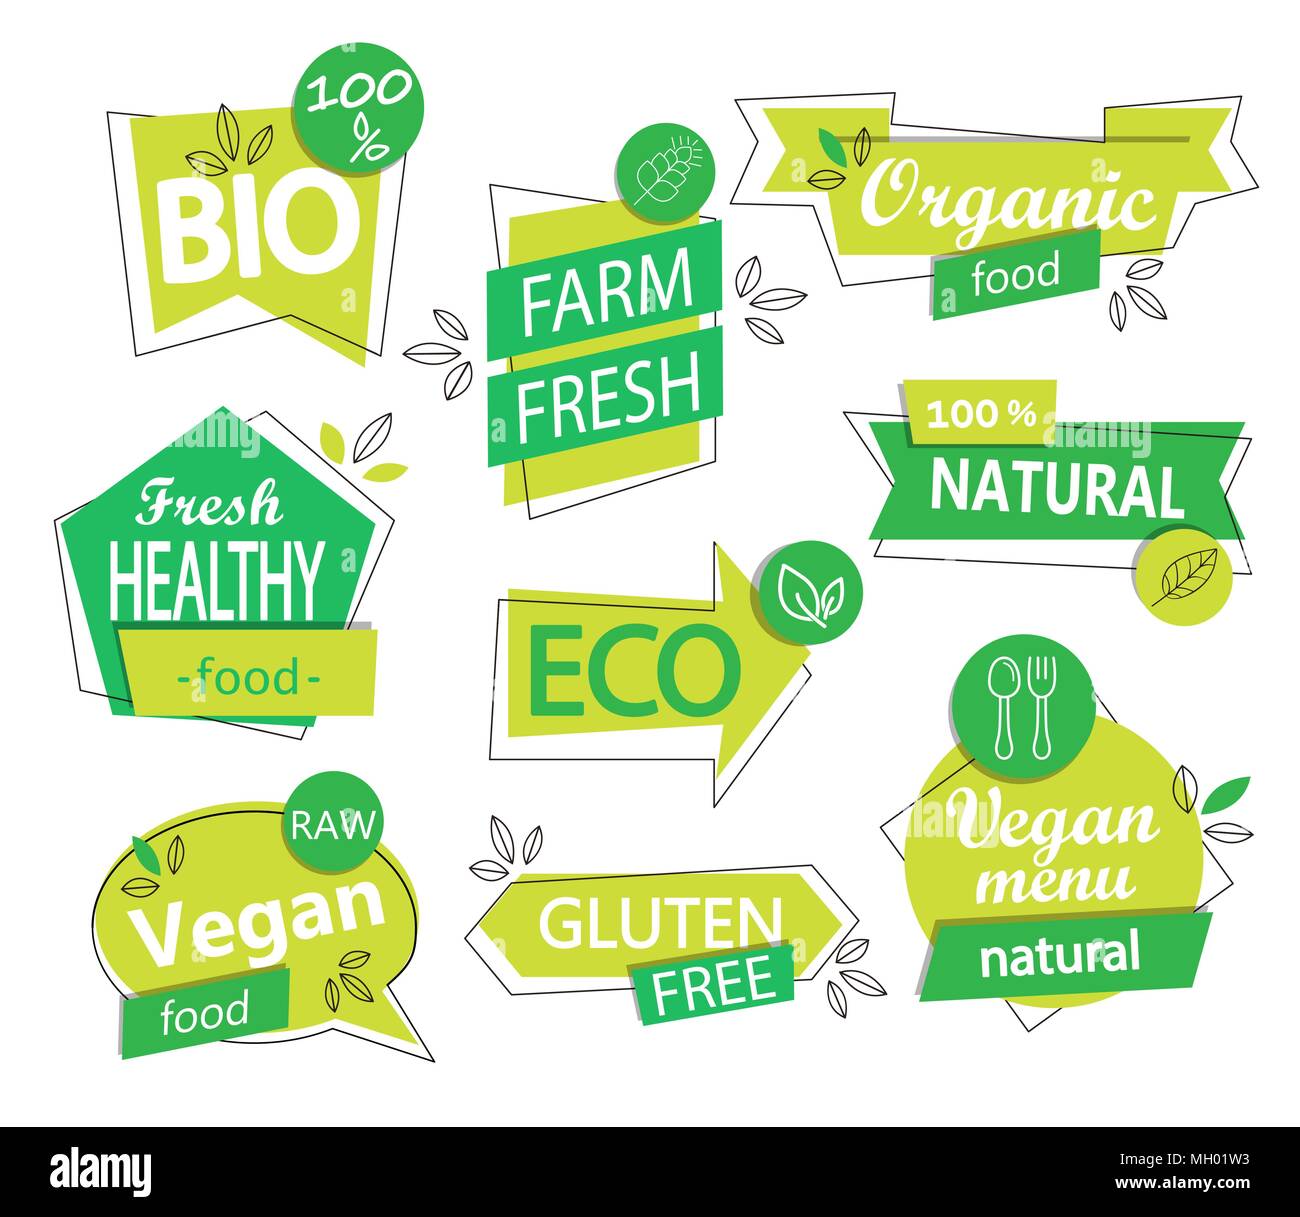 Vektor einrichten von Bio, Eco, organische und natürliche Aufklebern und Logos. Vegan und gesund essen Abzeichen, Markierungen gesetzt für Ihr Design - Café, Restaurants, Verpackung Stock Vektor